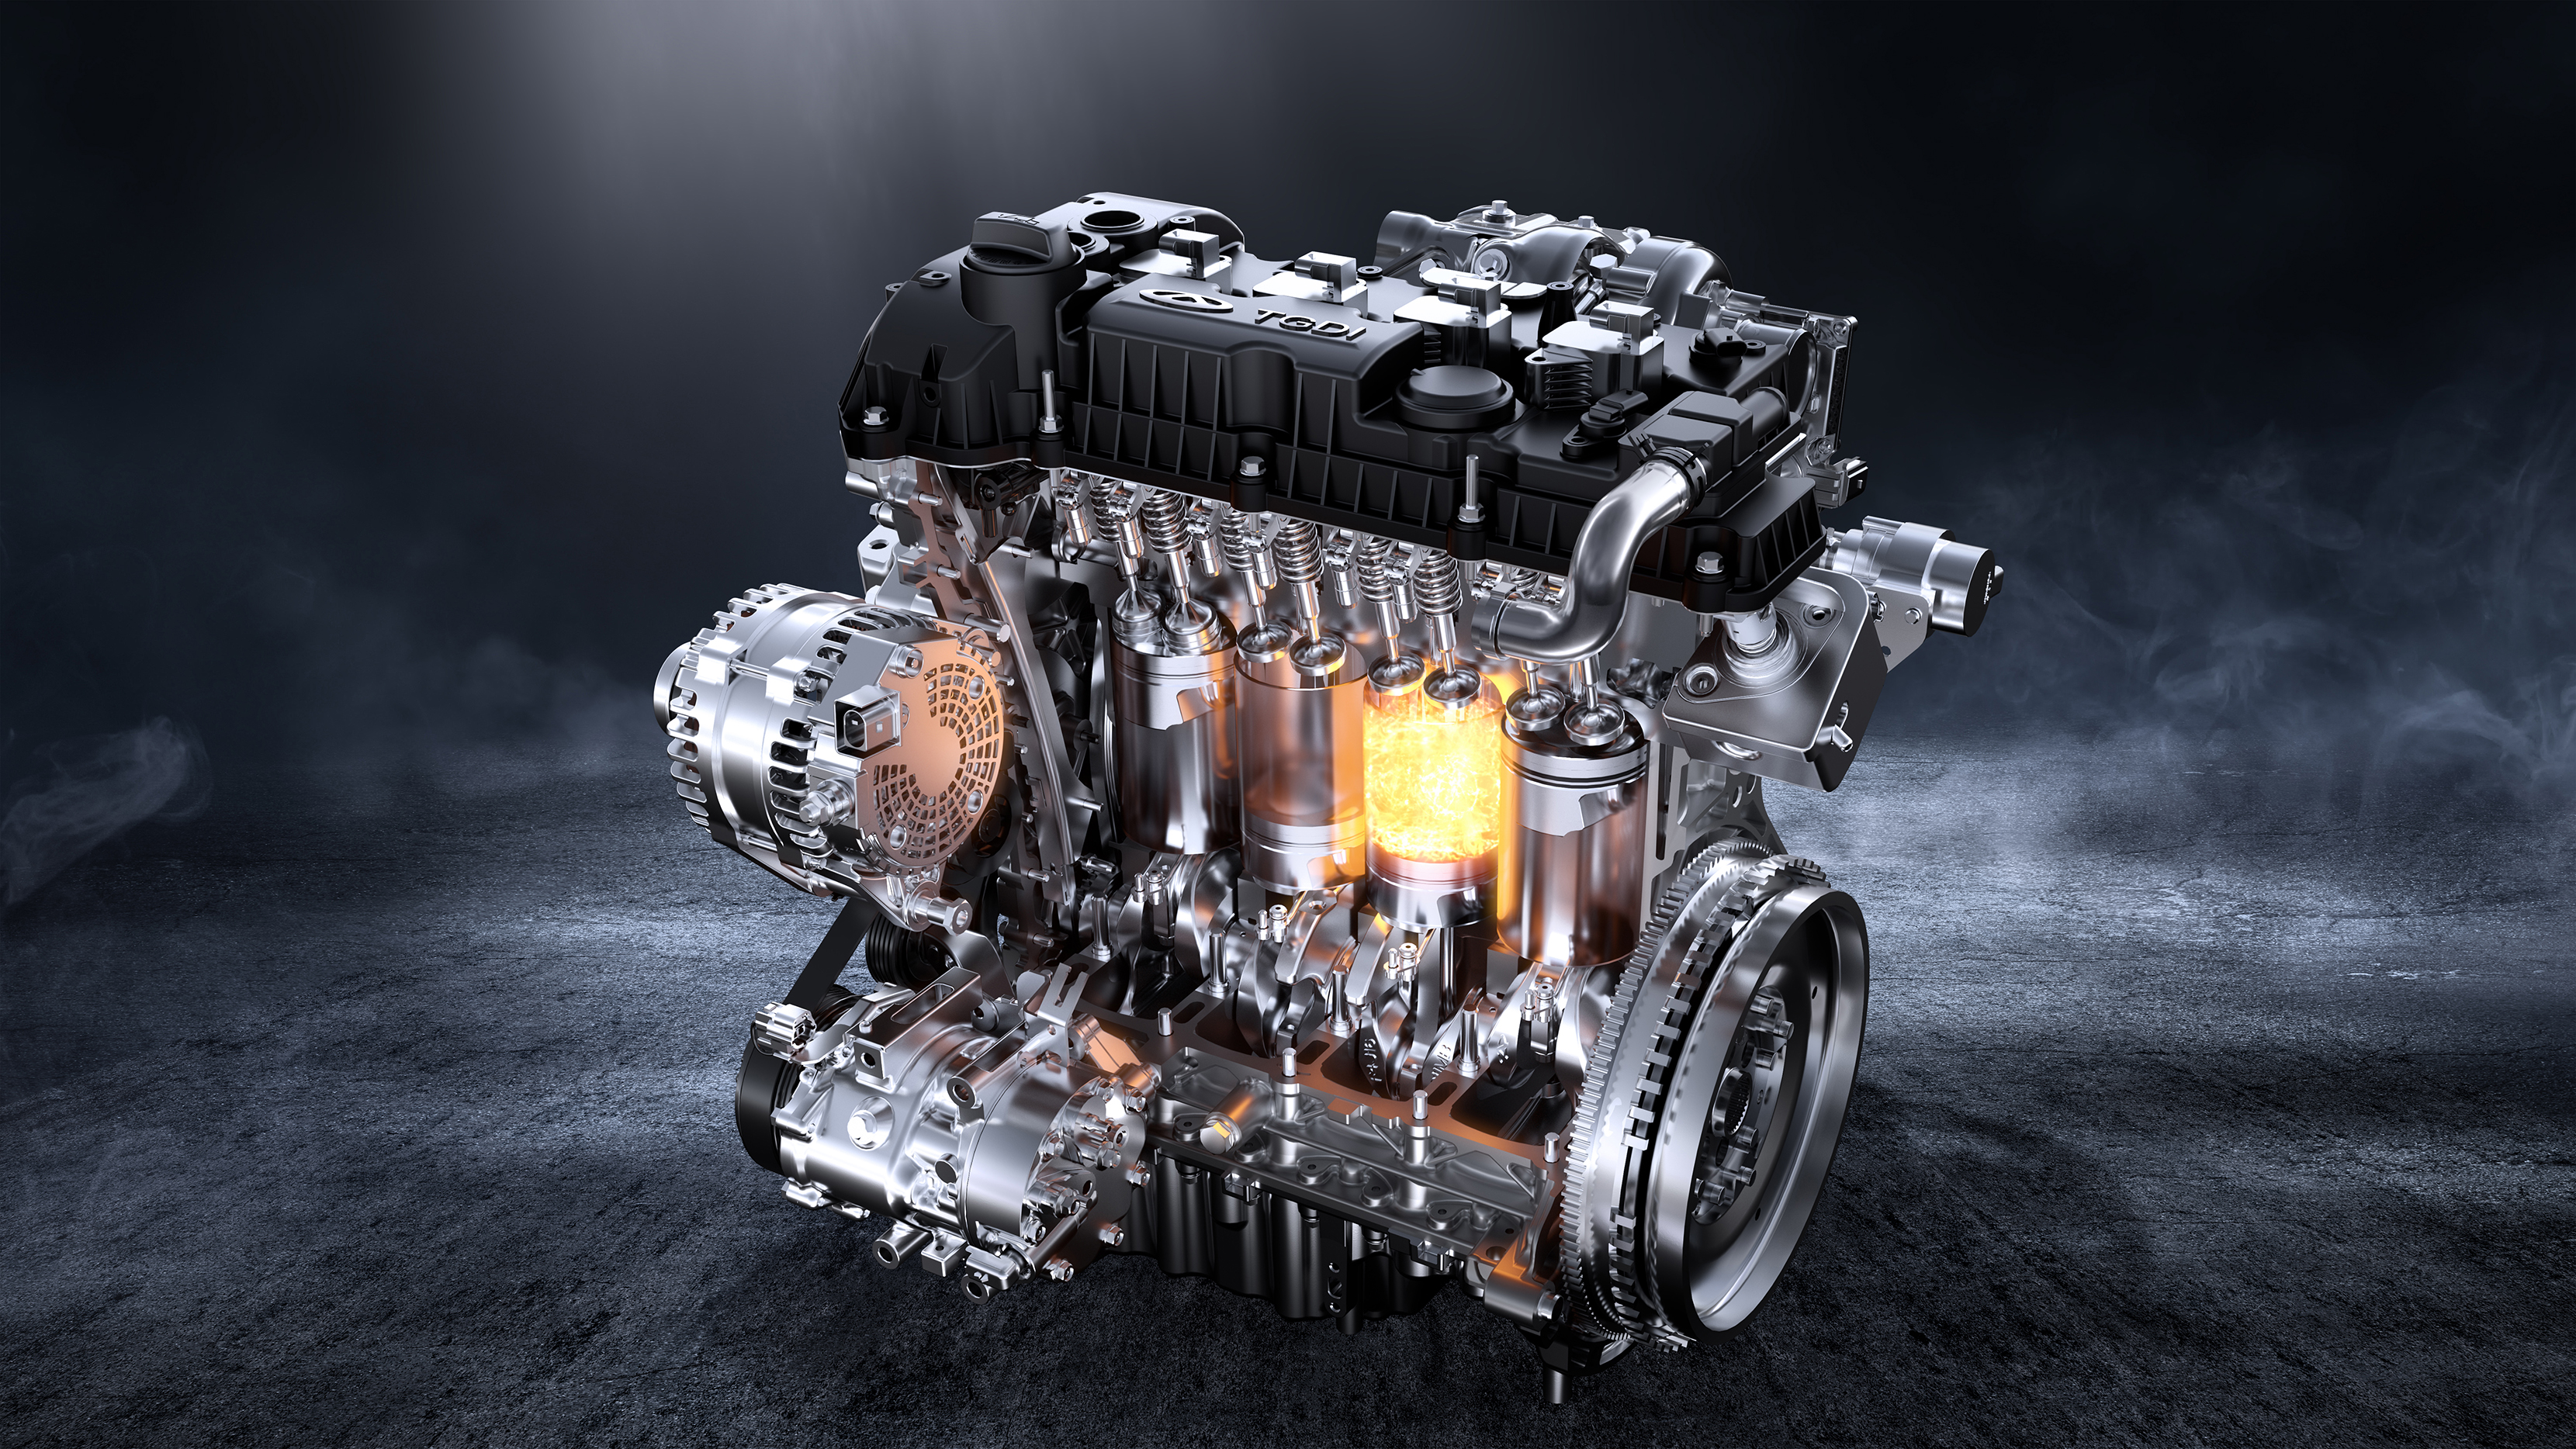 6tgdi缸内直喷涡轮增压发动机,拥有145kw最大功率,峰值扭矩高达290n